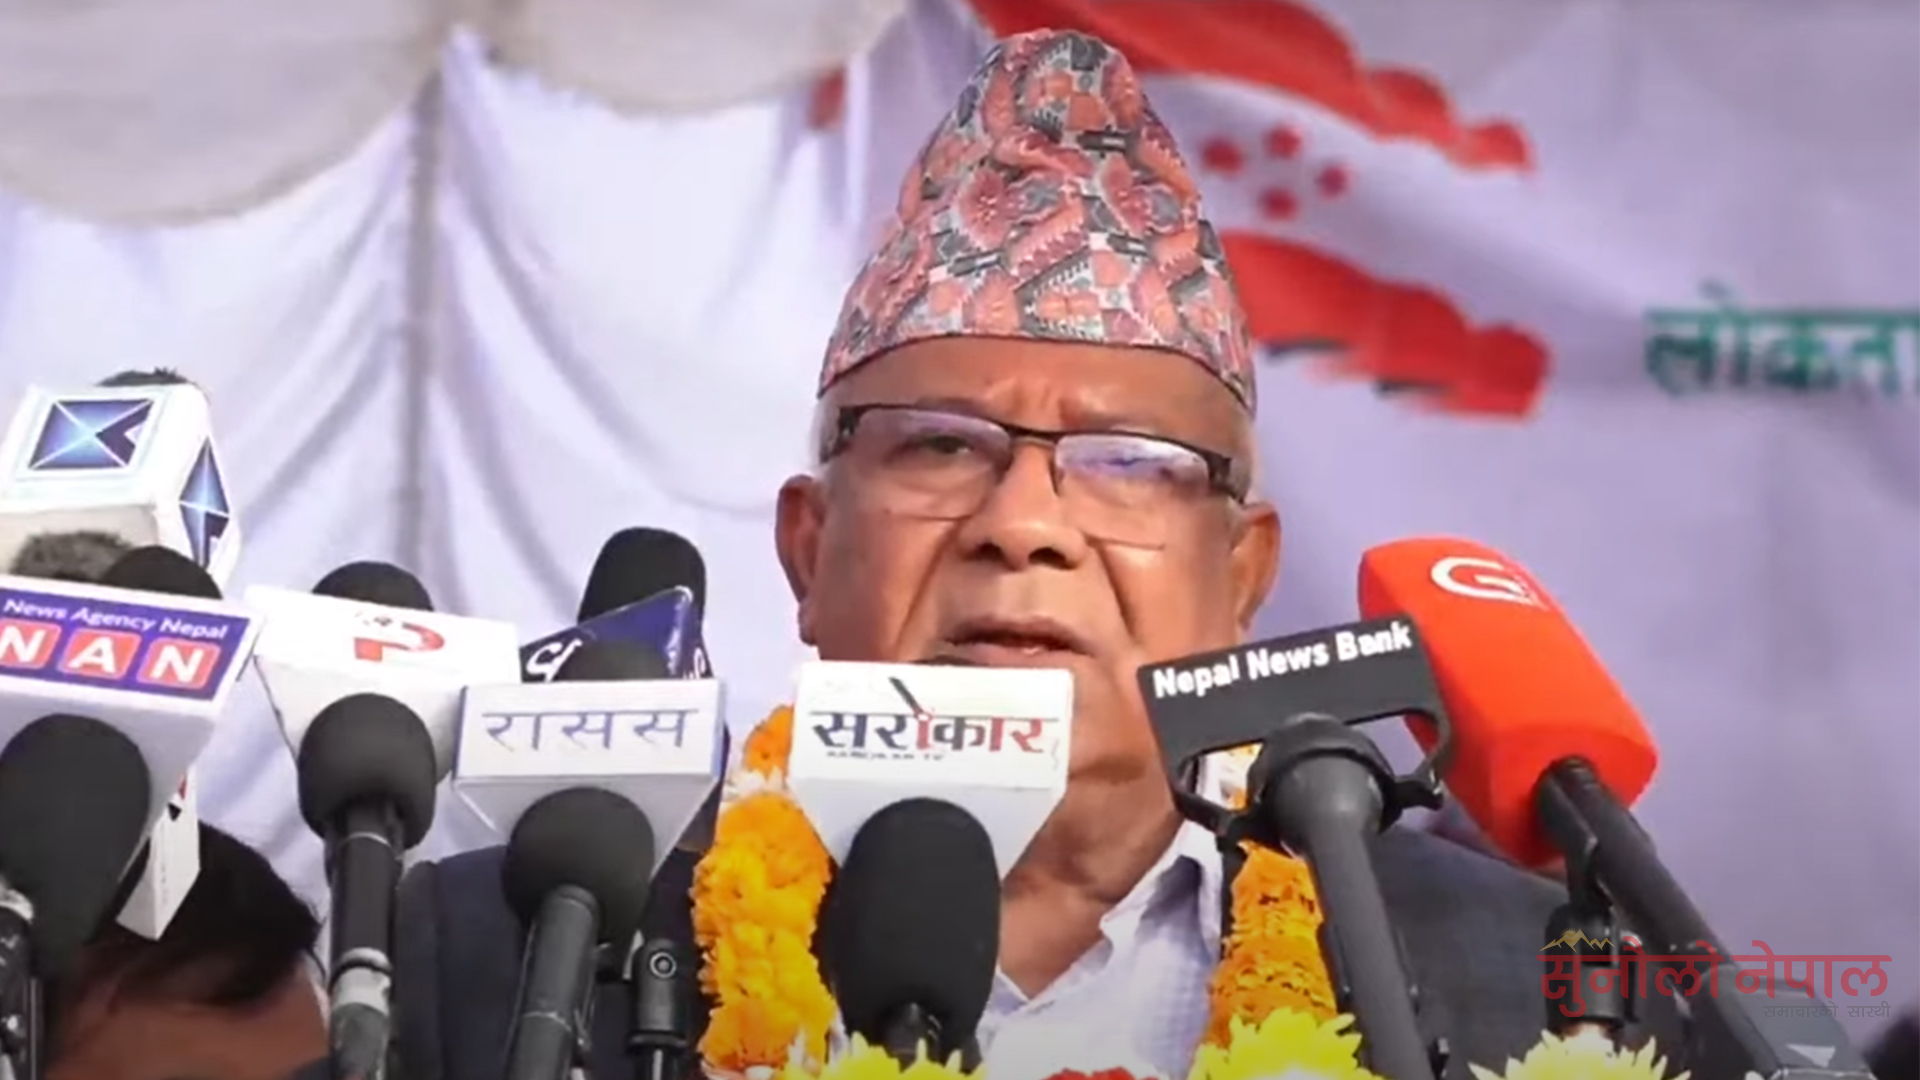 सत्तारुढ गठबन्धन कुनै पनि बेला टुट्न सक्ने अवस्थामा पुगेको छ : अध्यक्ष नेपाल